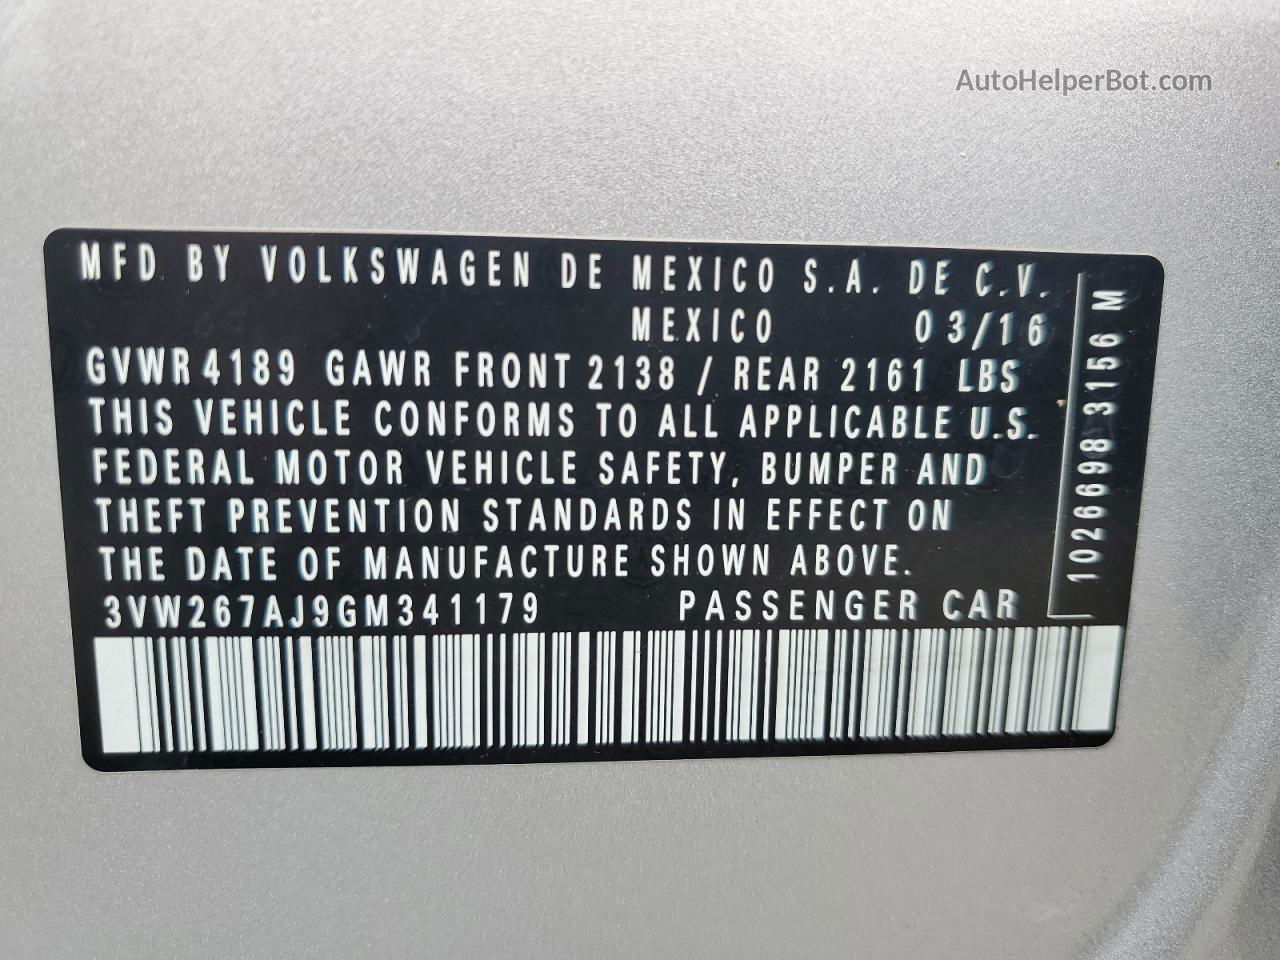 2016 Volkswagen Jetta S Silver vin: 3VW267AJ9GM341179